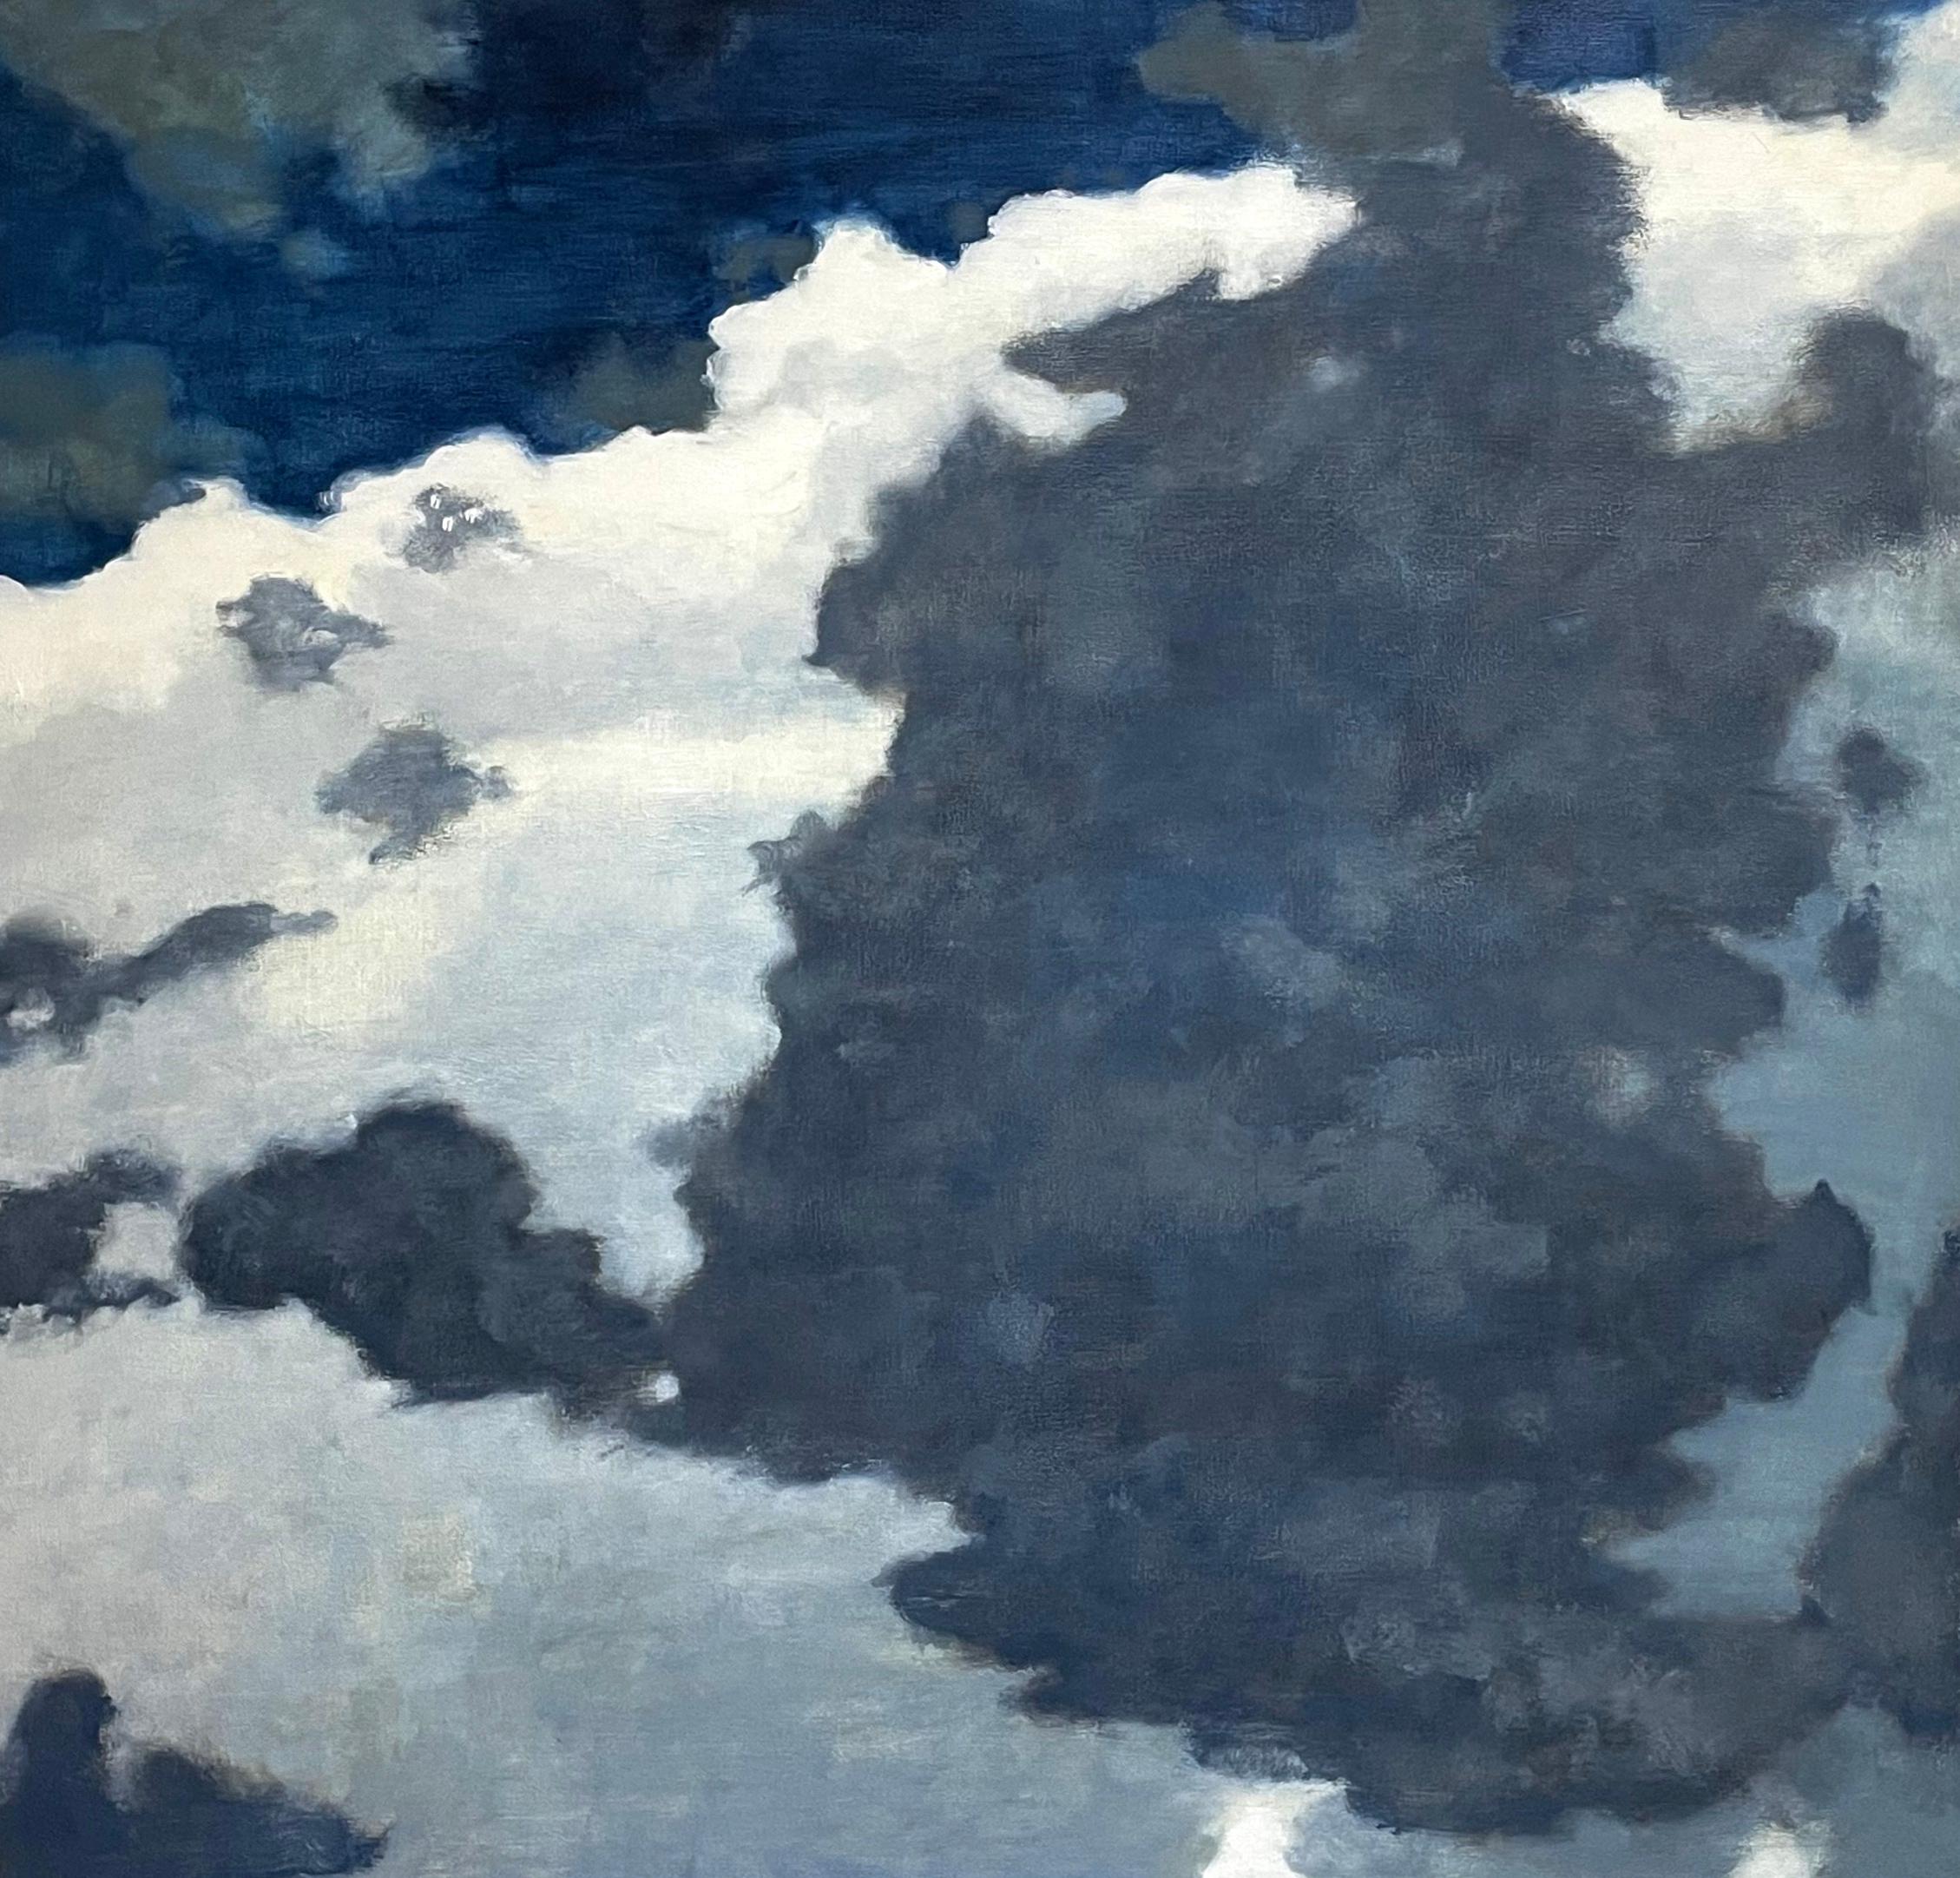 Landscape Painting David Konigsberg - De A Window Seat One, nuages ivoire crème, ciel bleu cobalt, paysage